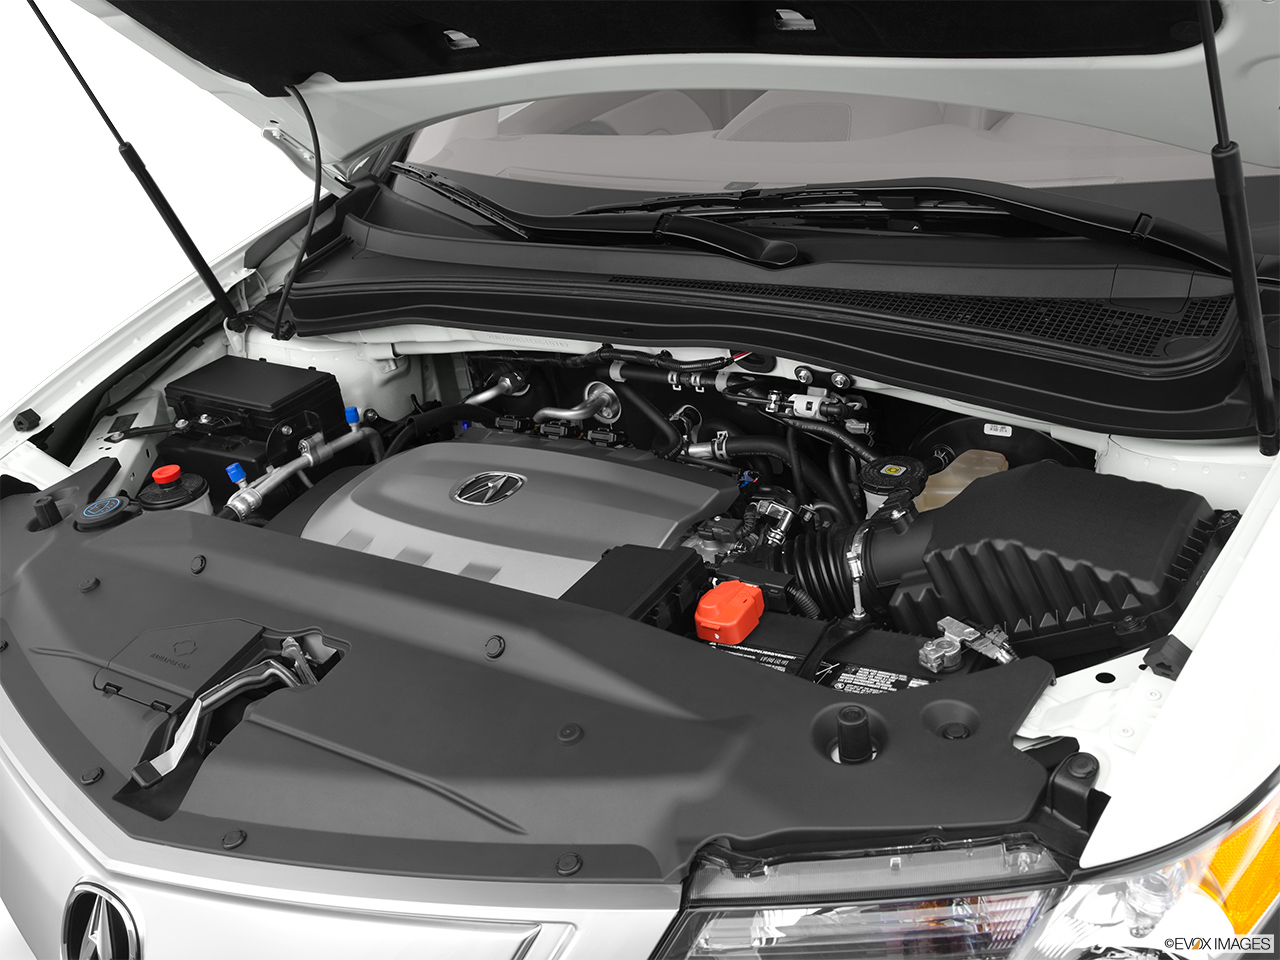 2012 Acura MDX MDX Engine. 